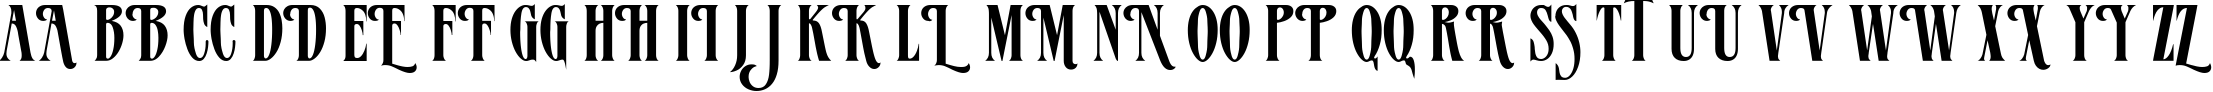 Пример написания английского алфавита шрифтом MazamaPlain Light